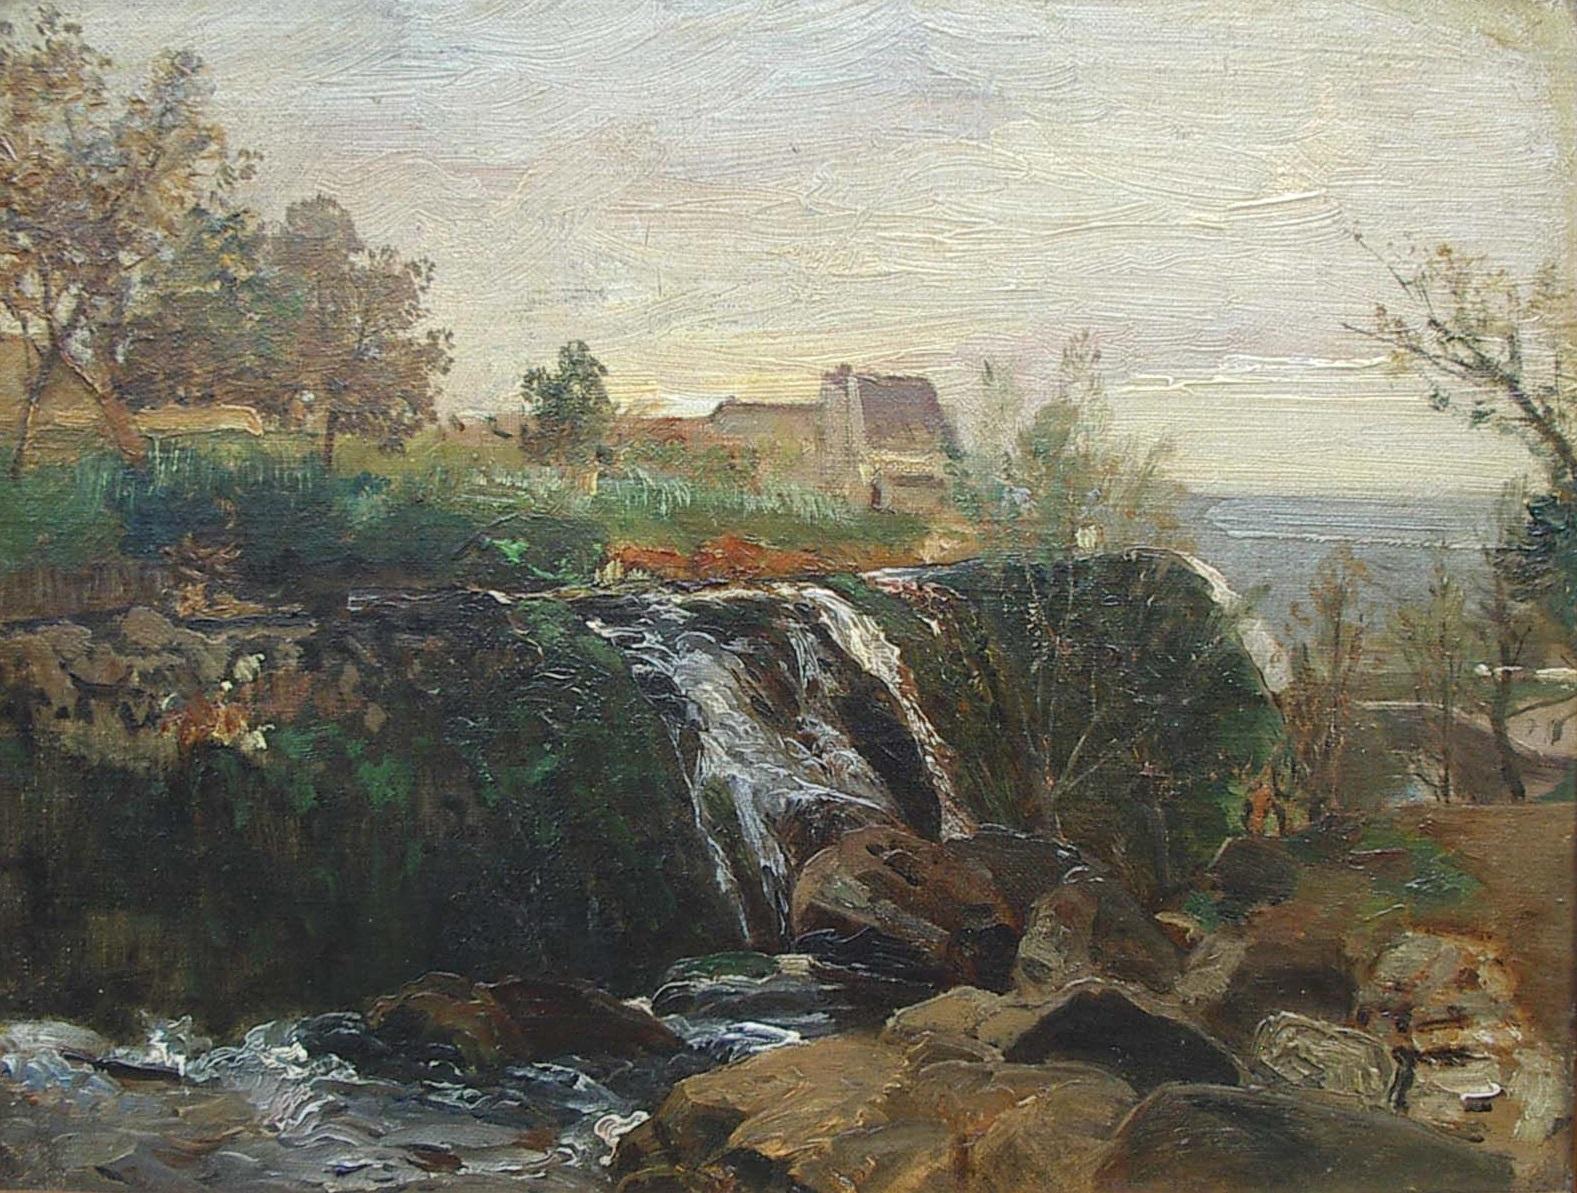 Landscape Painting Emil Jacob Schindler - « Paysage de rivière près de la côte », huile sur toile, années 1880